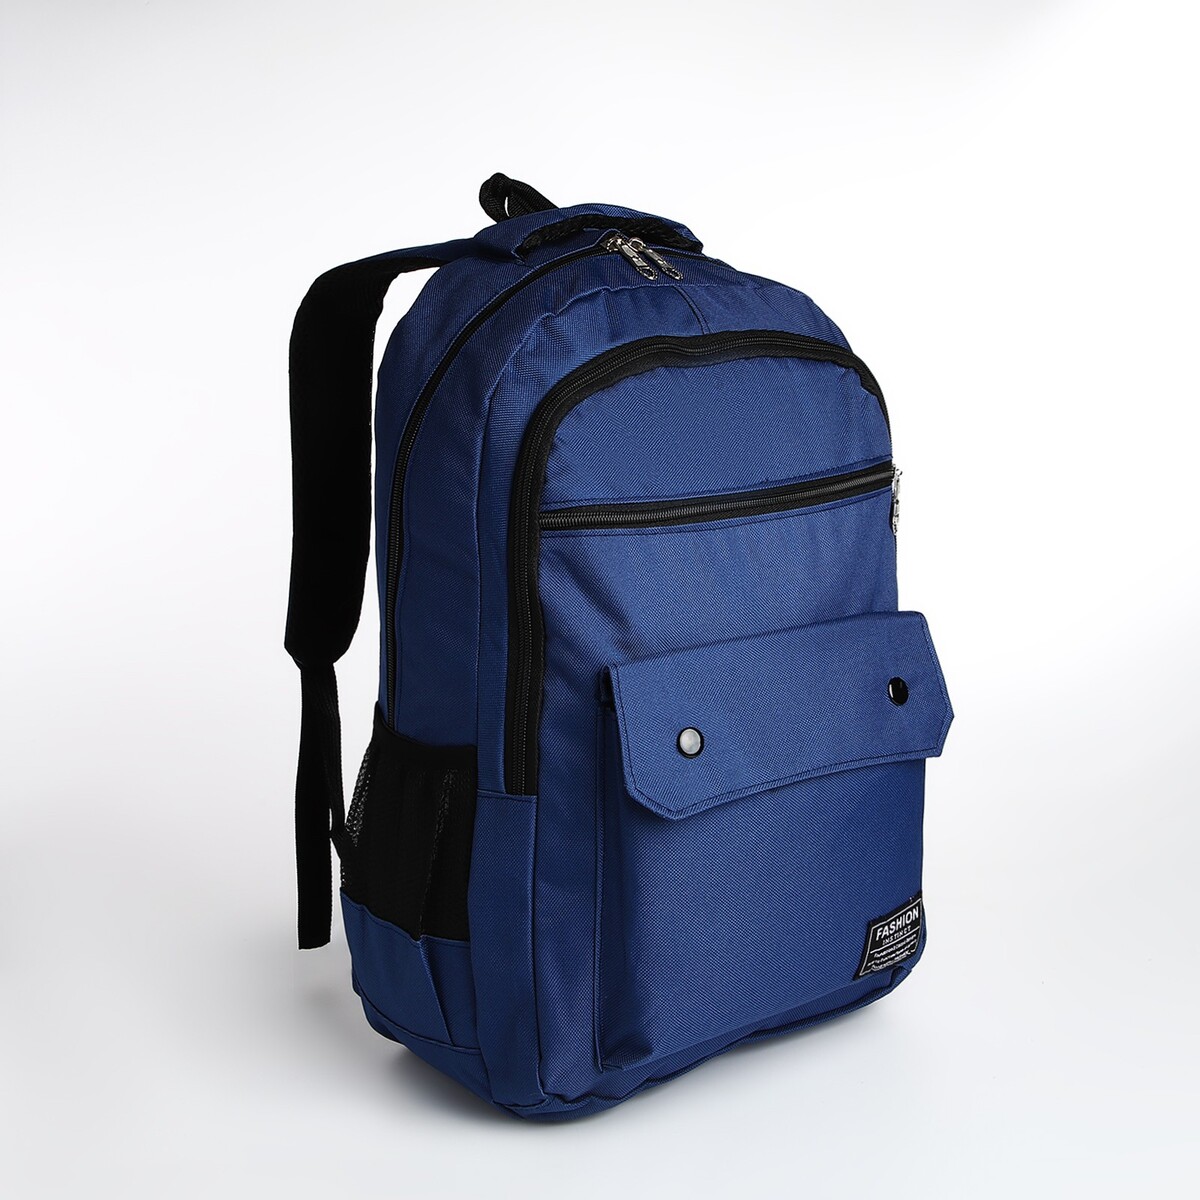 Рюкзак молодежный на молнии, 2 отдела, 4 кармана, цвет синий рюкзак молодежный из текстиля 2 отдела на молниях 3 кармана синий